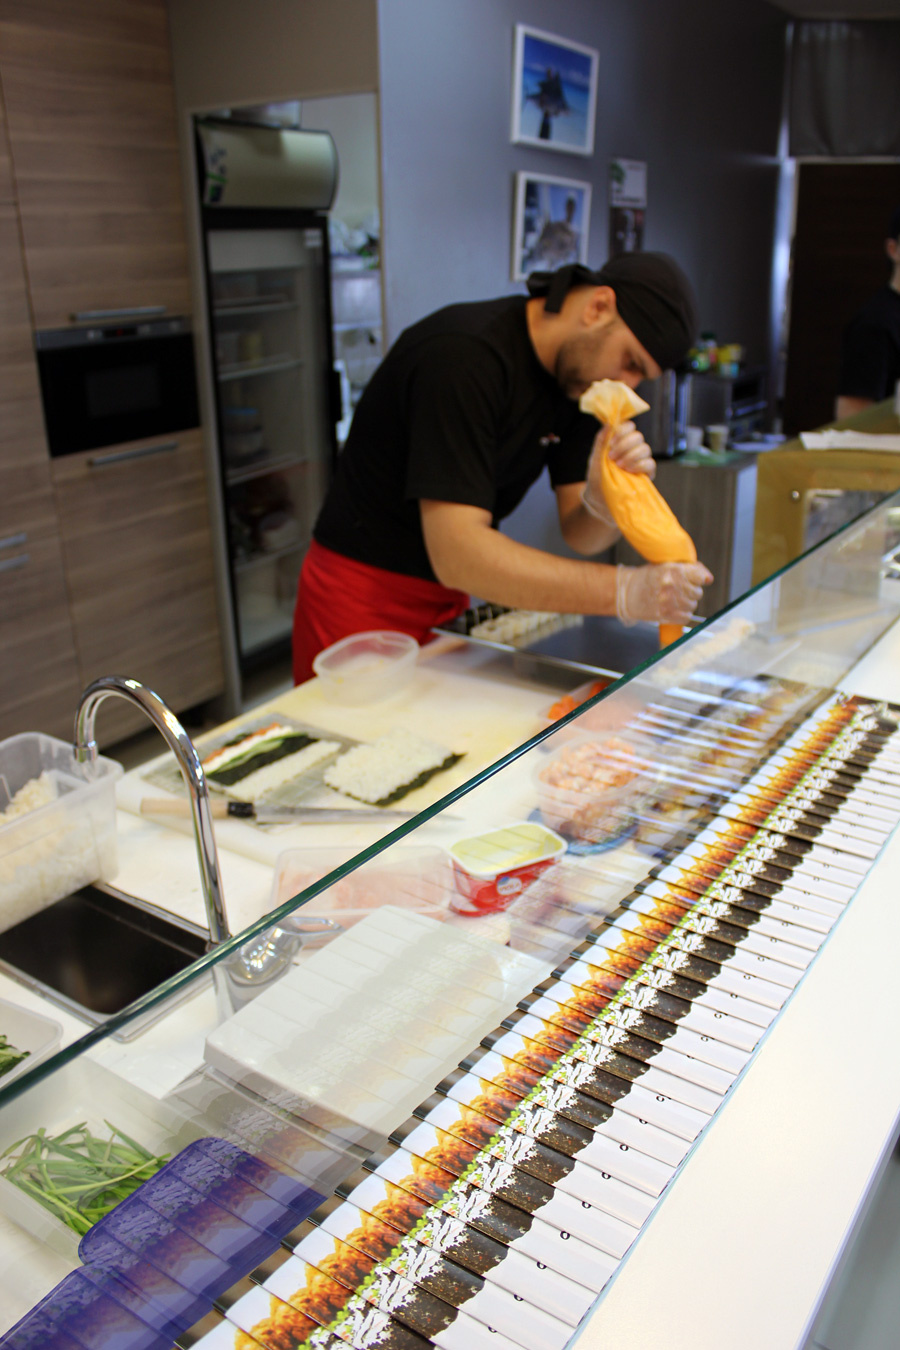 Кухня в «Суши Make» открытая. Гости магазинов-буфетов могут наблюдать за всеми этапами приготовления вкуснейших роллов и убедиться в том, что в производстве используются качественные ингредиенты.